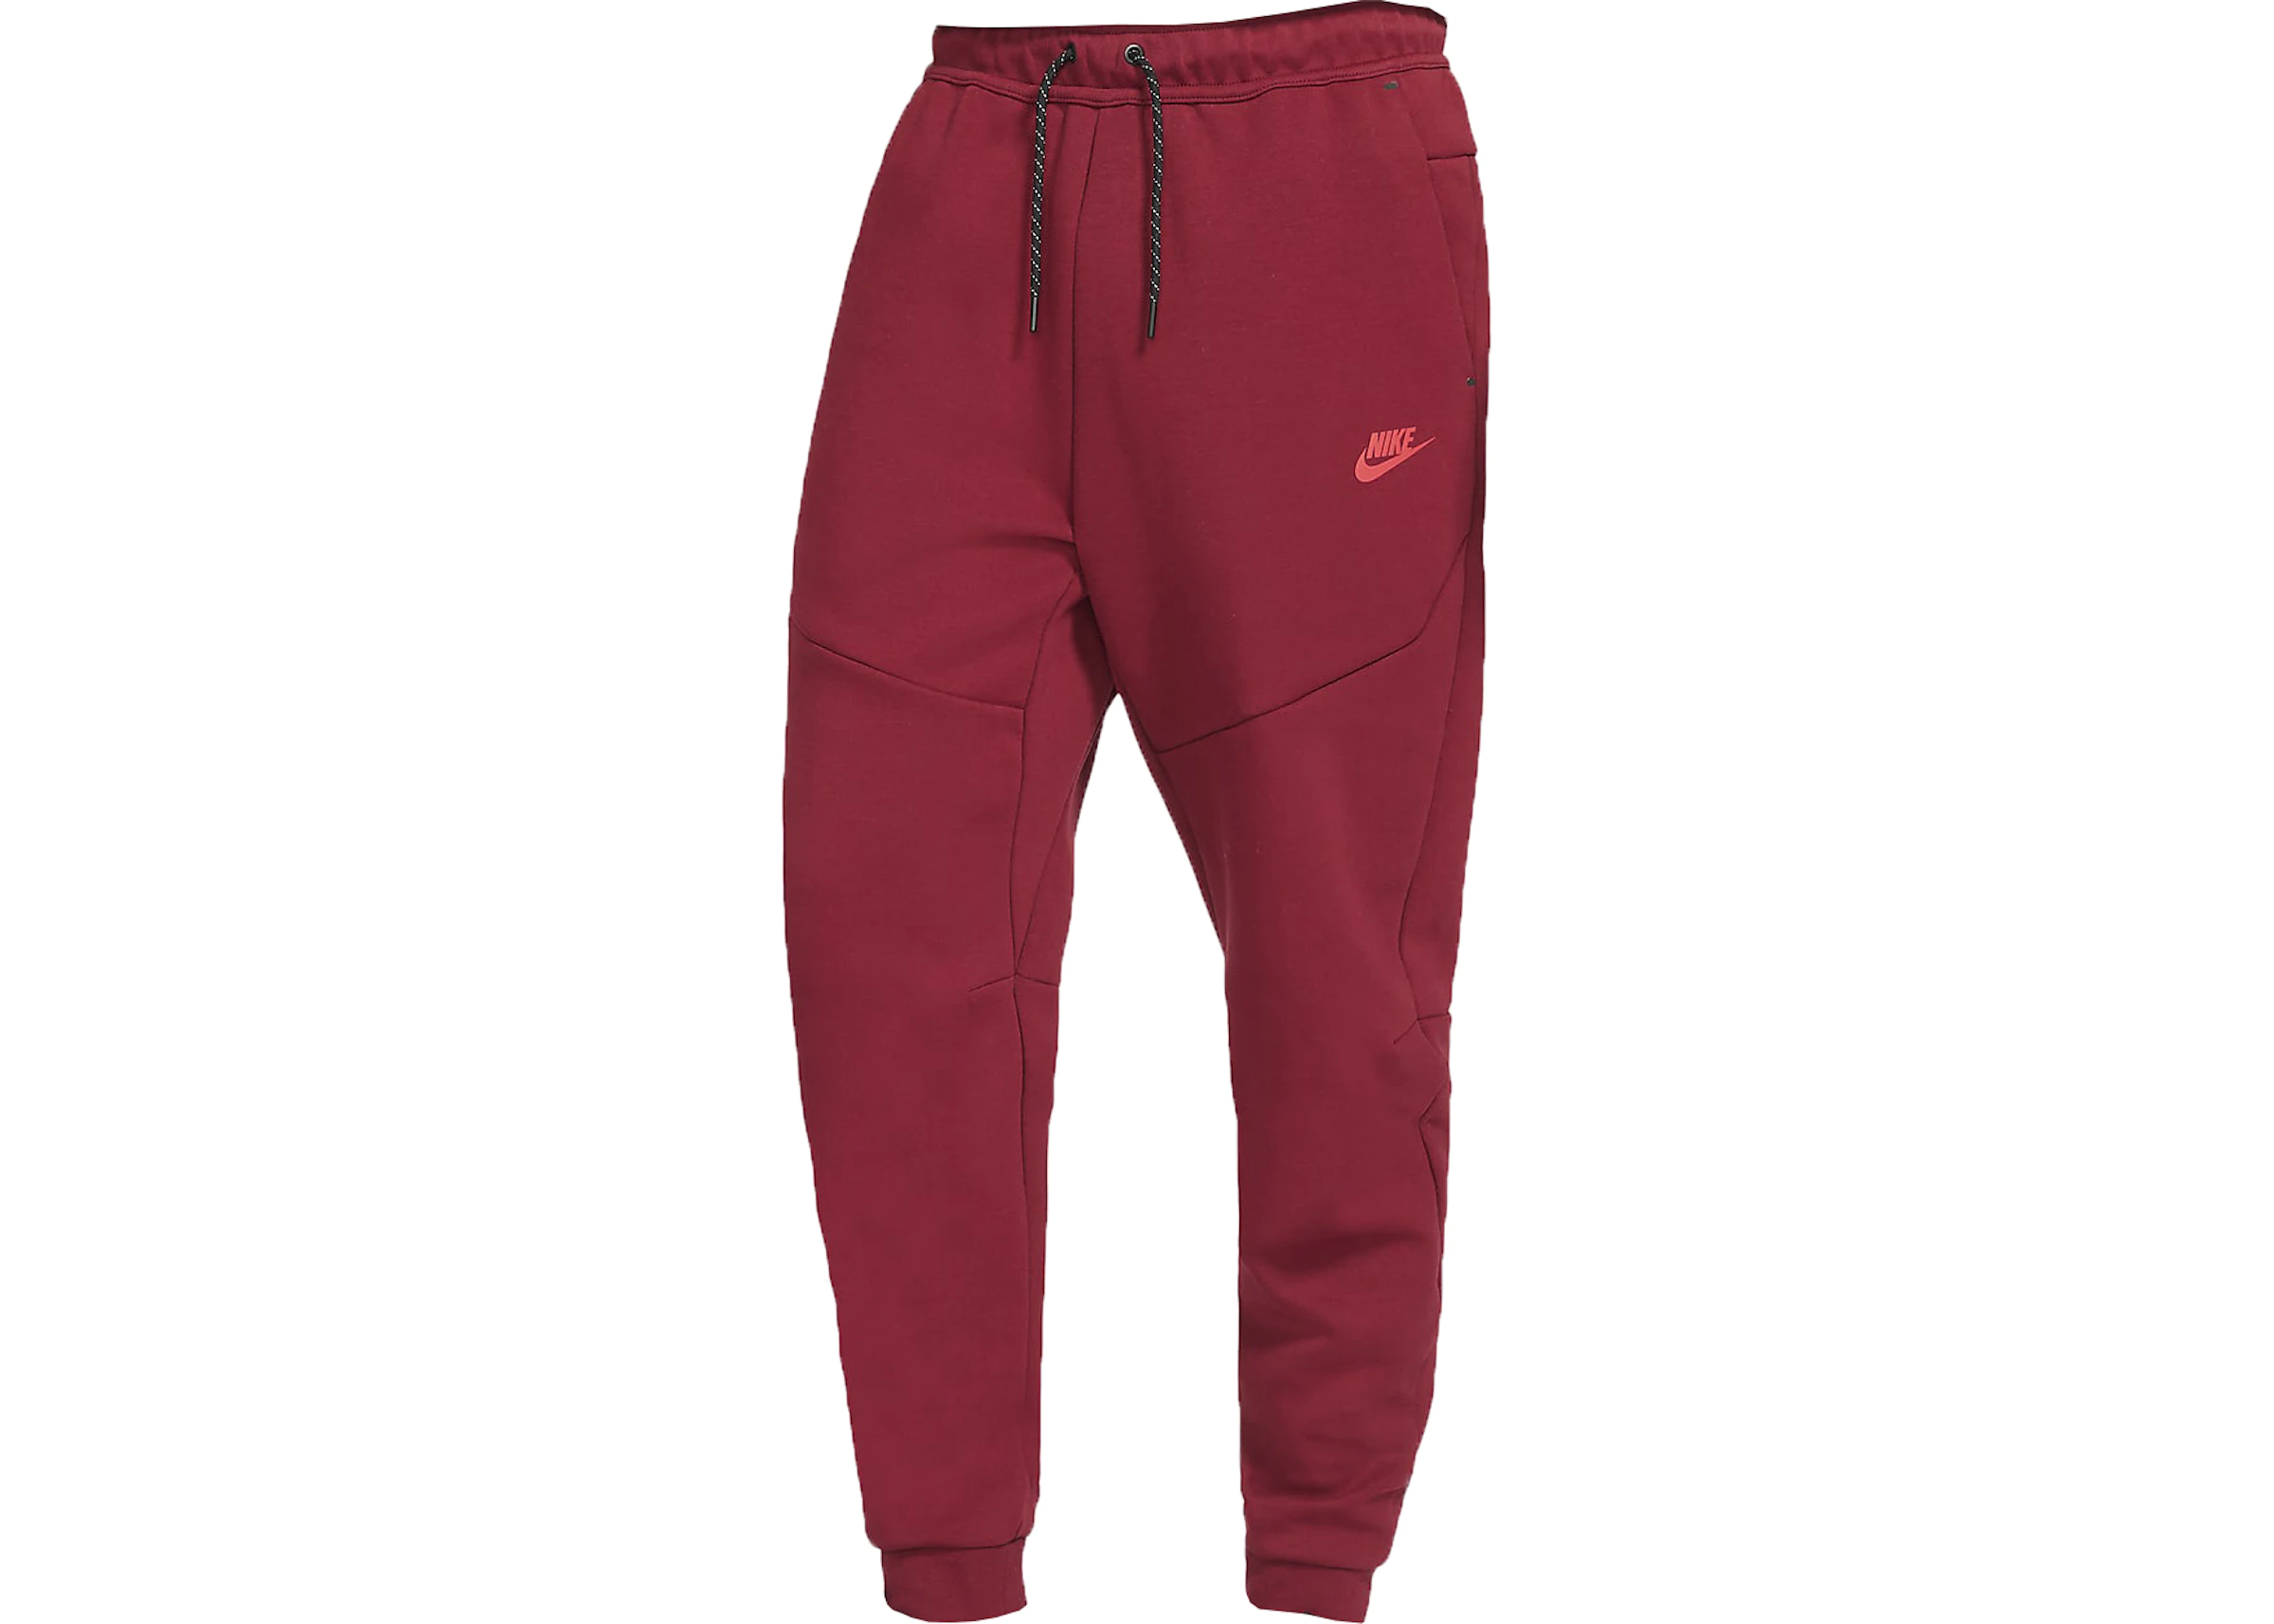 Nike Nike Sportswear Tech Fleece Jogger Pants Team Red/Dark Maroon -